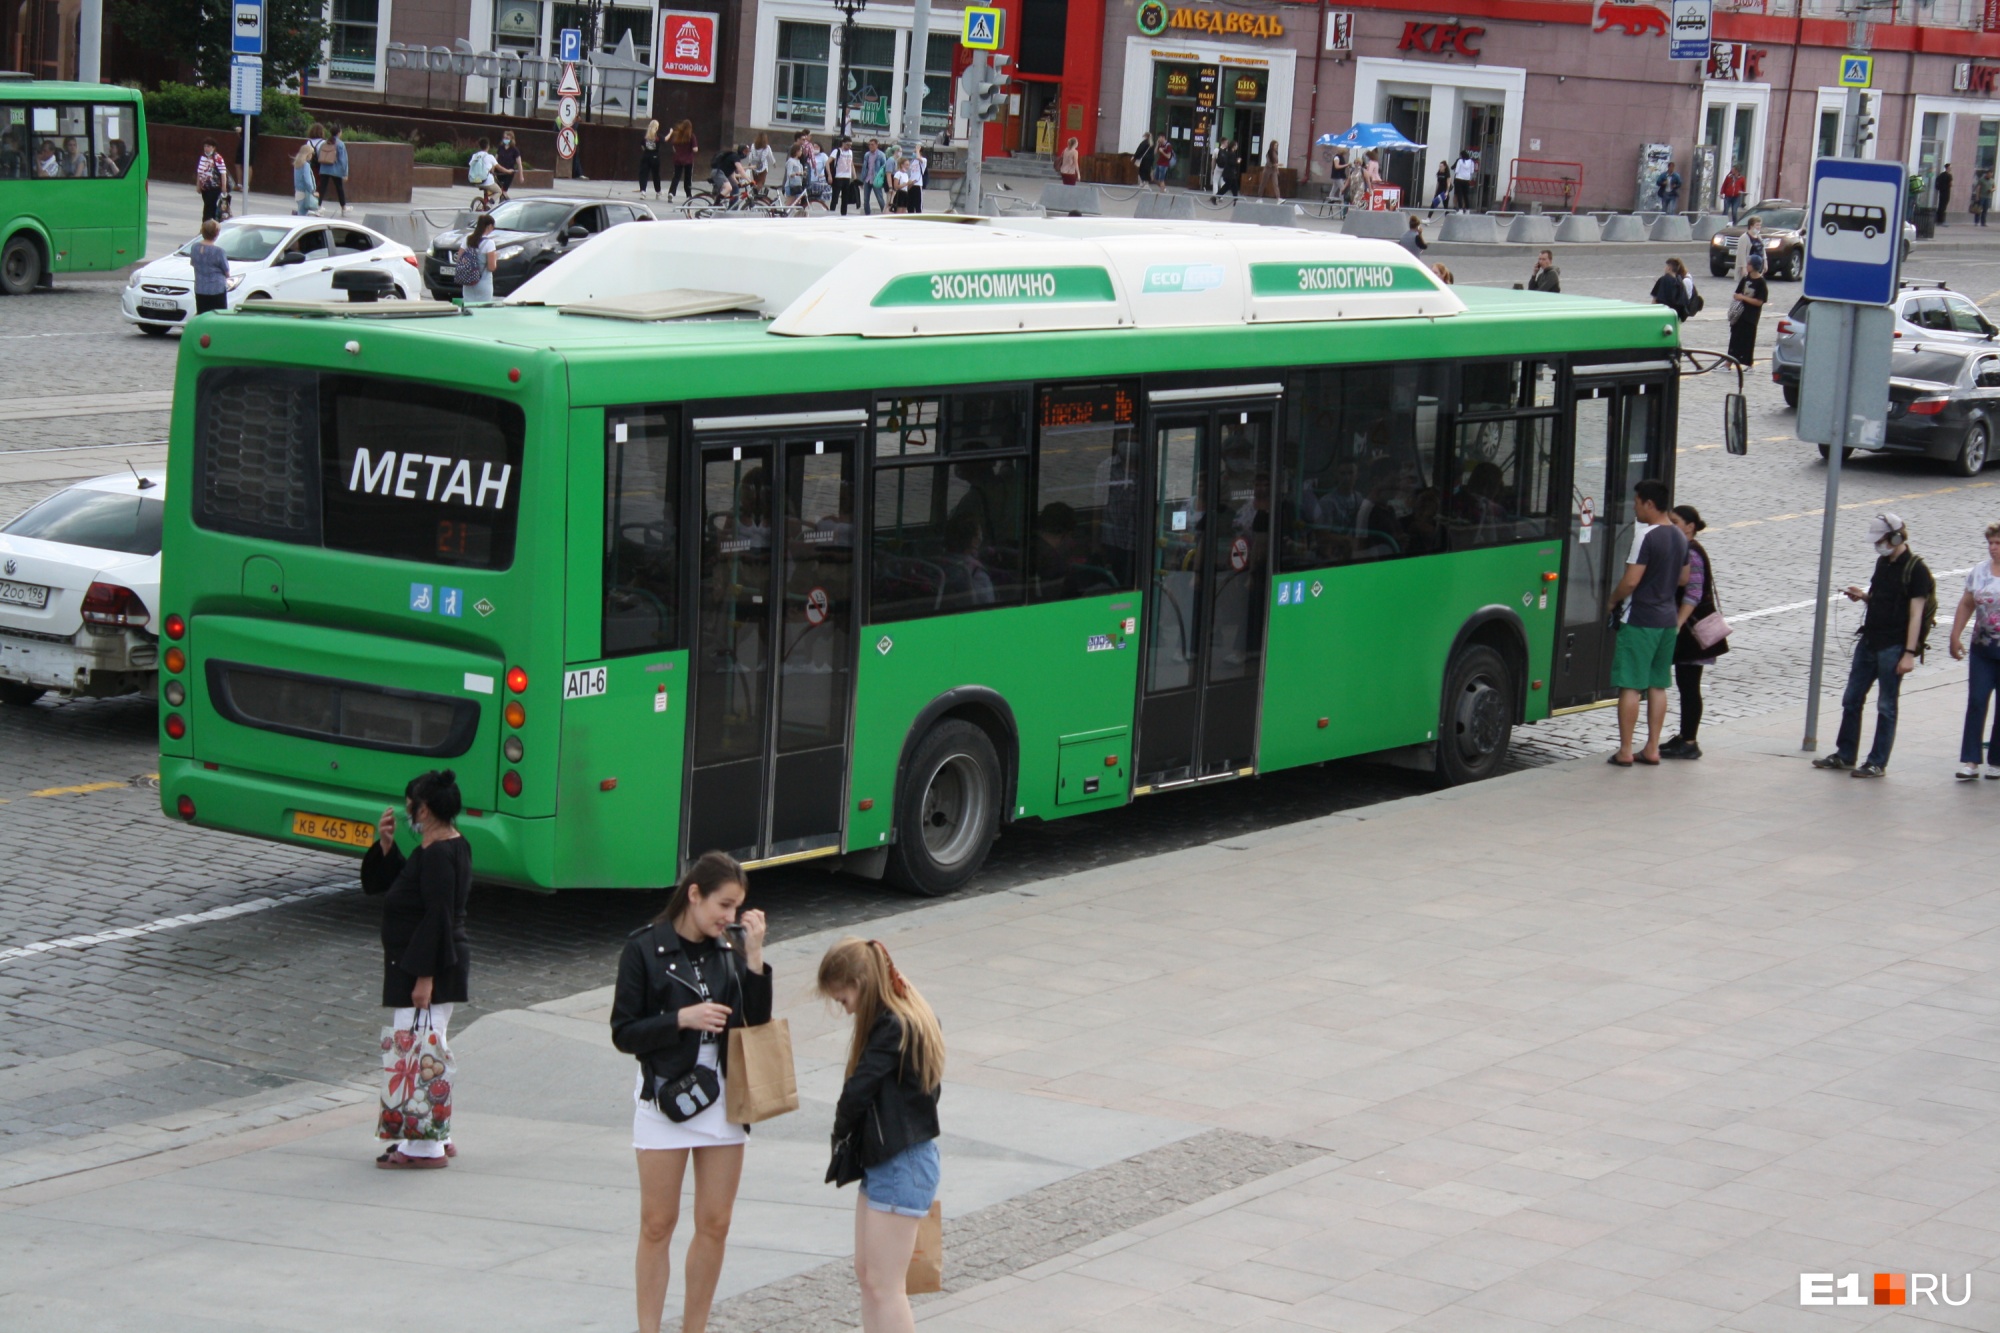 Осенью Екатеринбург получит 57 новых автобусов. Стало известно, какие именно